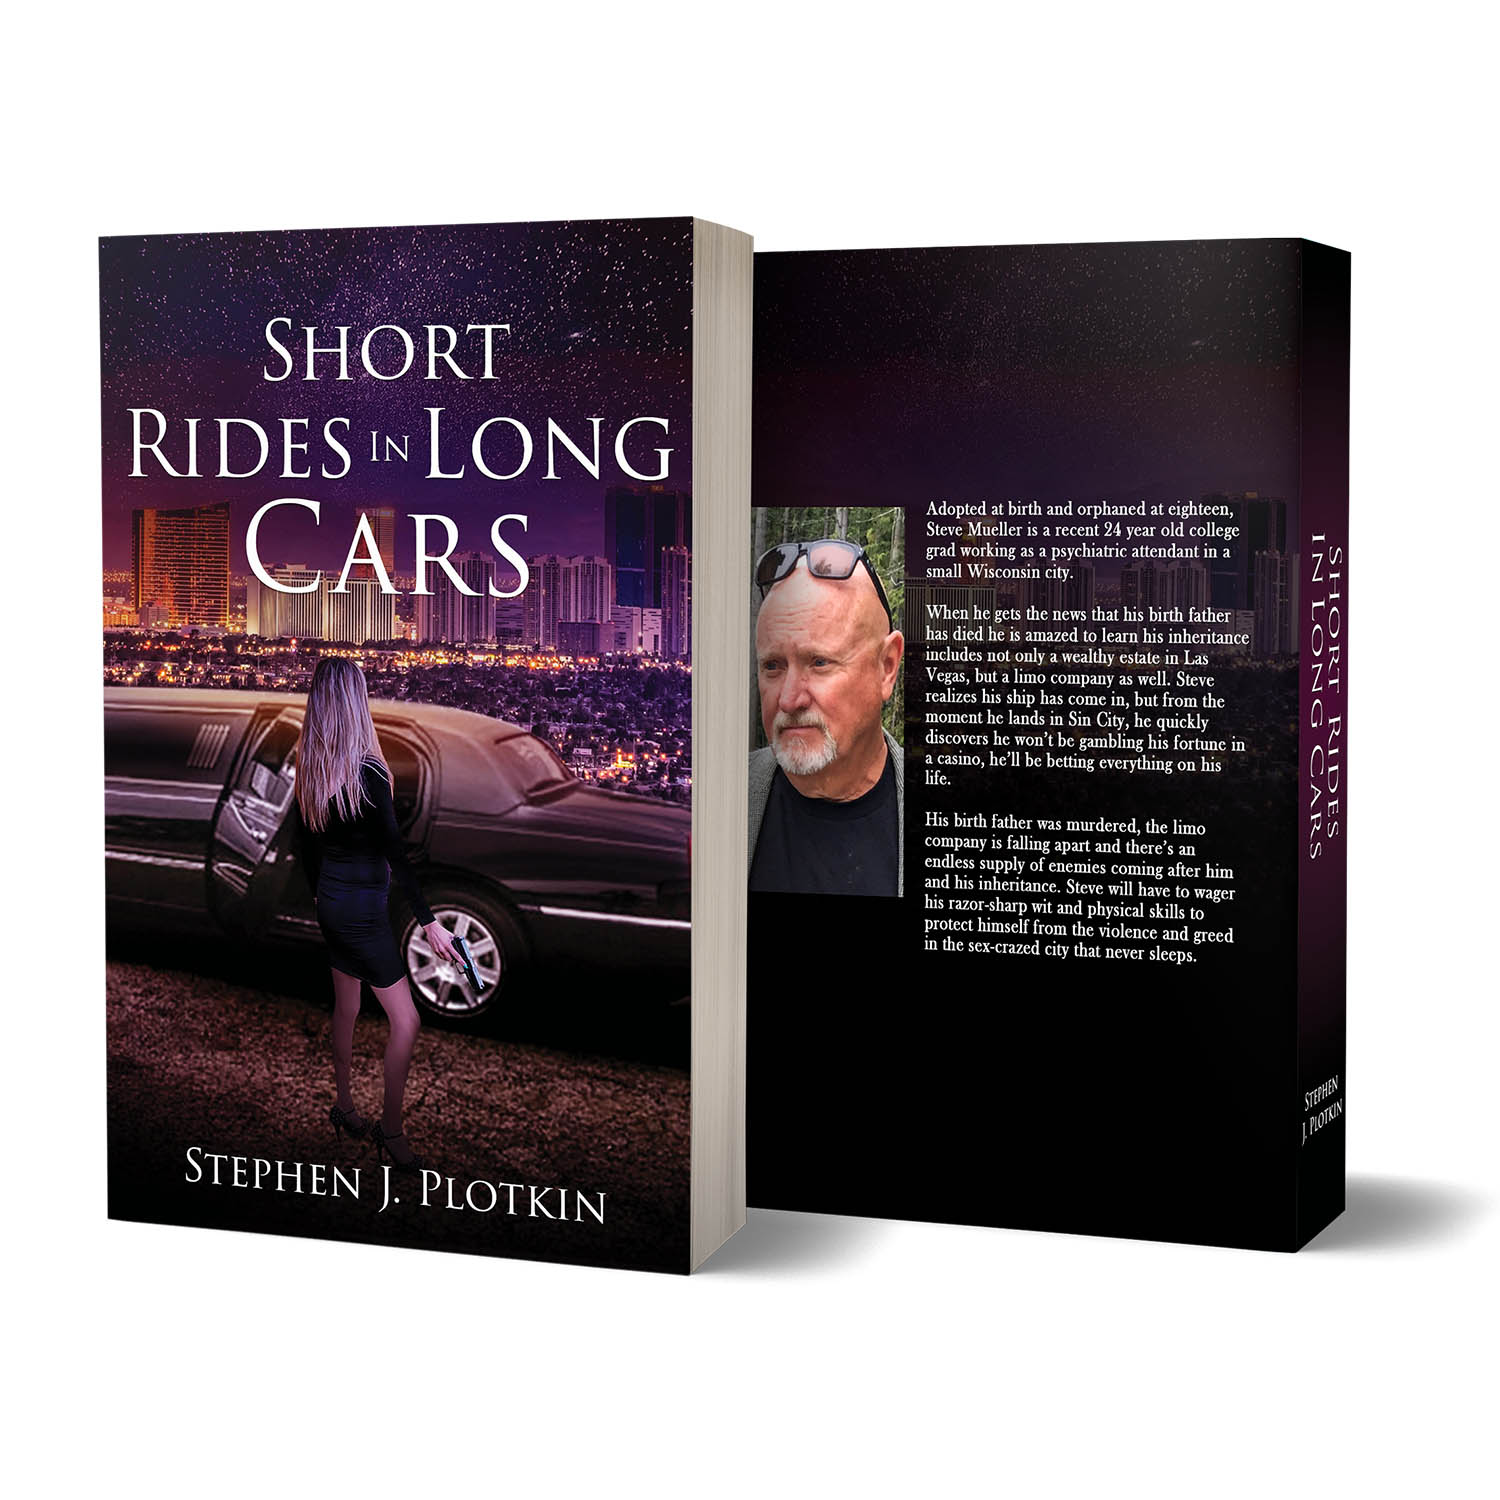 bookconsilio-portfolio-Short-Rides-In-Long-Cars-paperback-bookcoverdesign